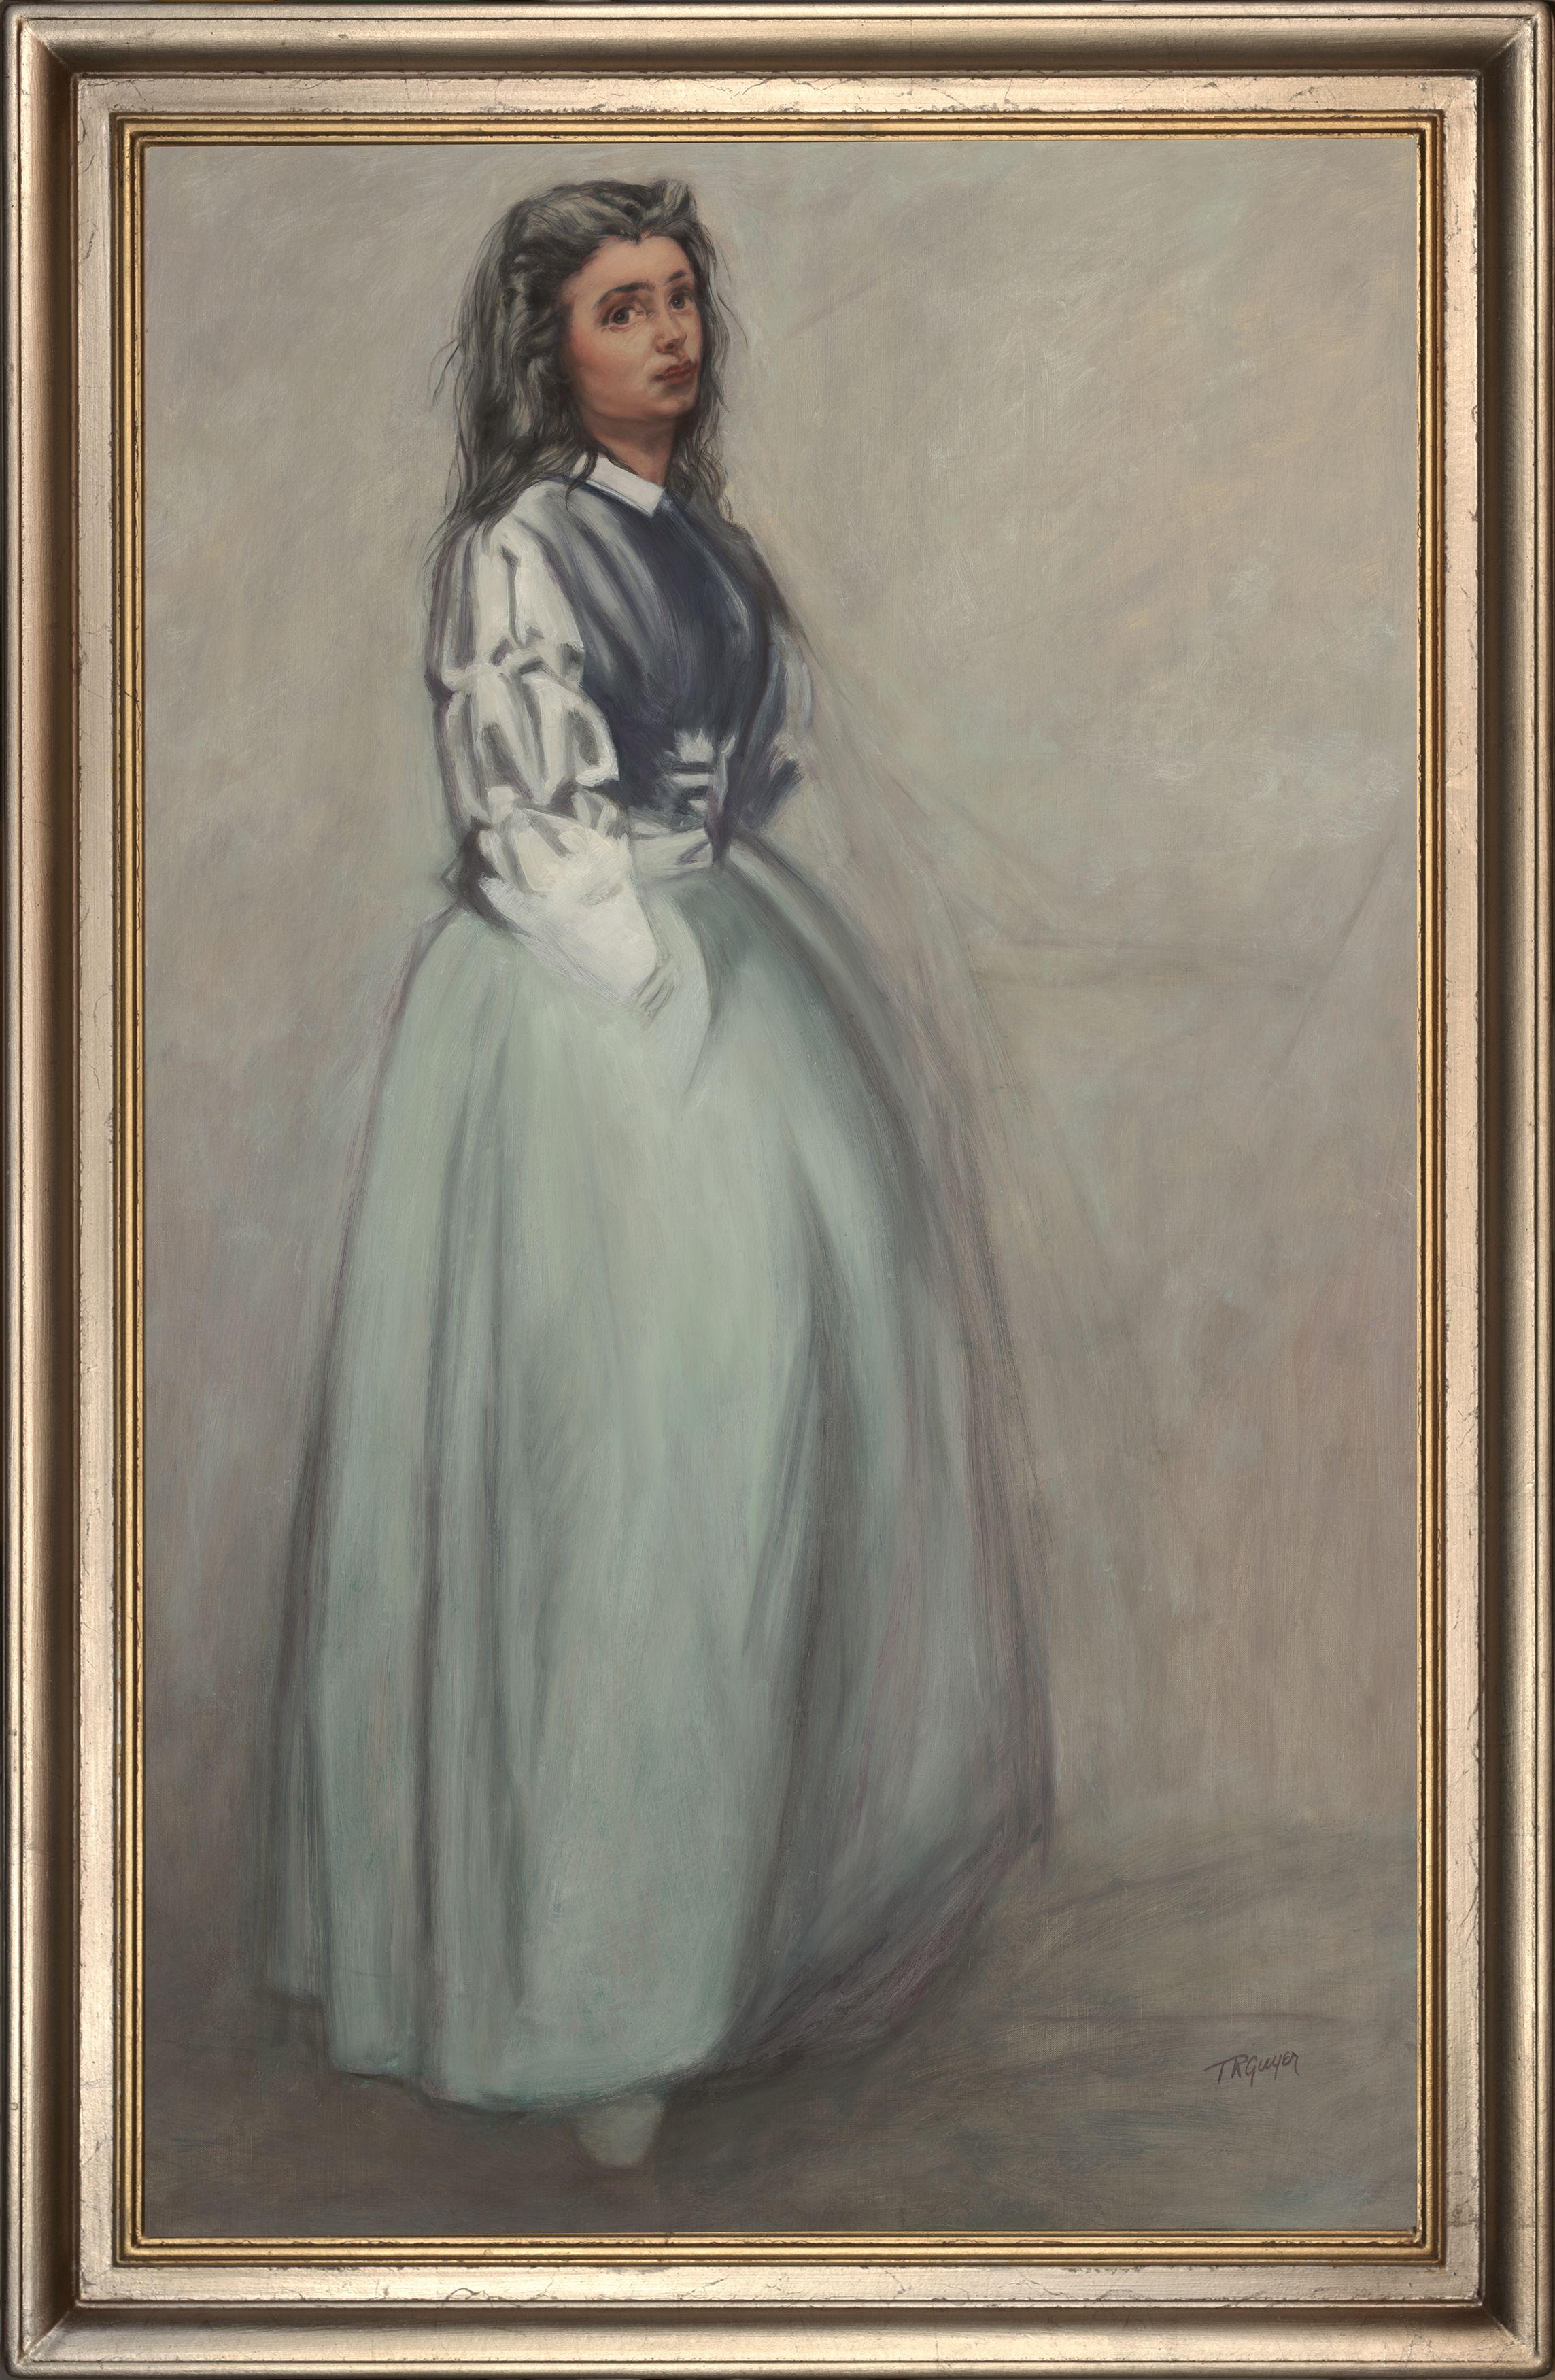 Fumette stehend, nach einer Radierung von James Whistler, Gemälde, Öl auf Leinwand (Sonstige Kunststile), Painting, von Terry Guyer